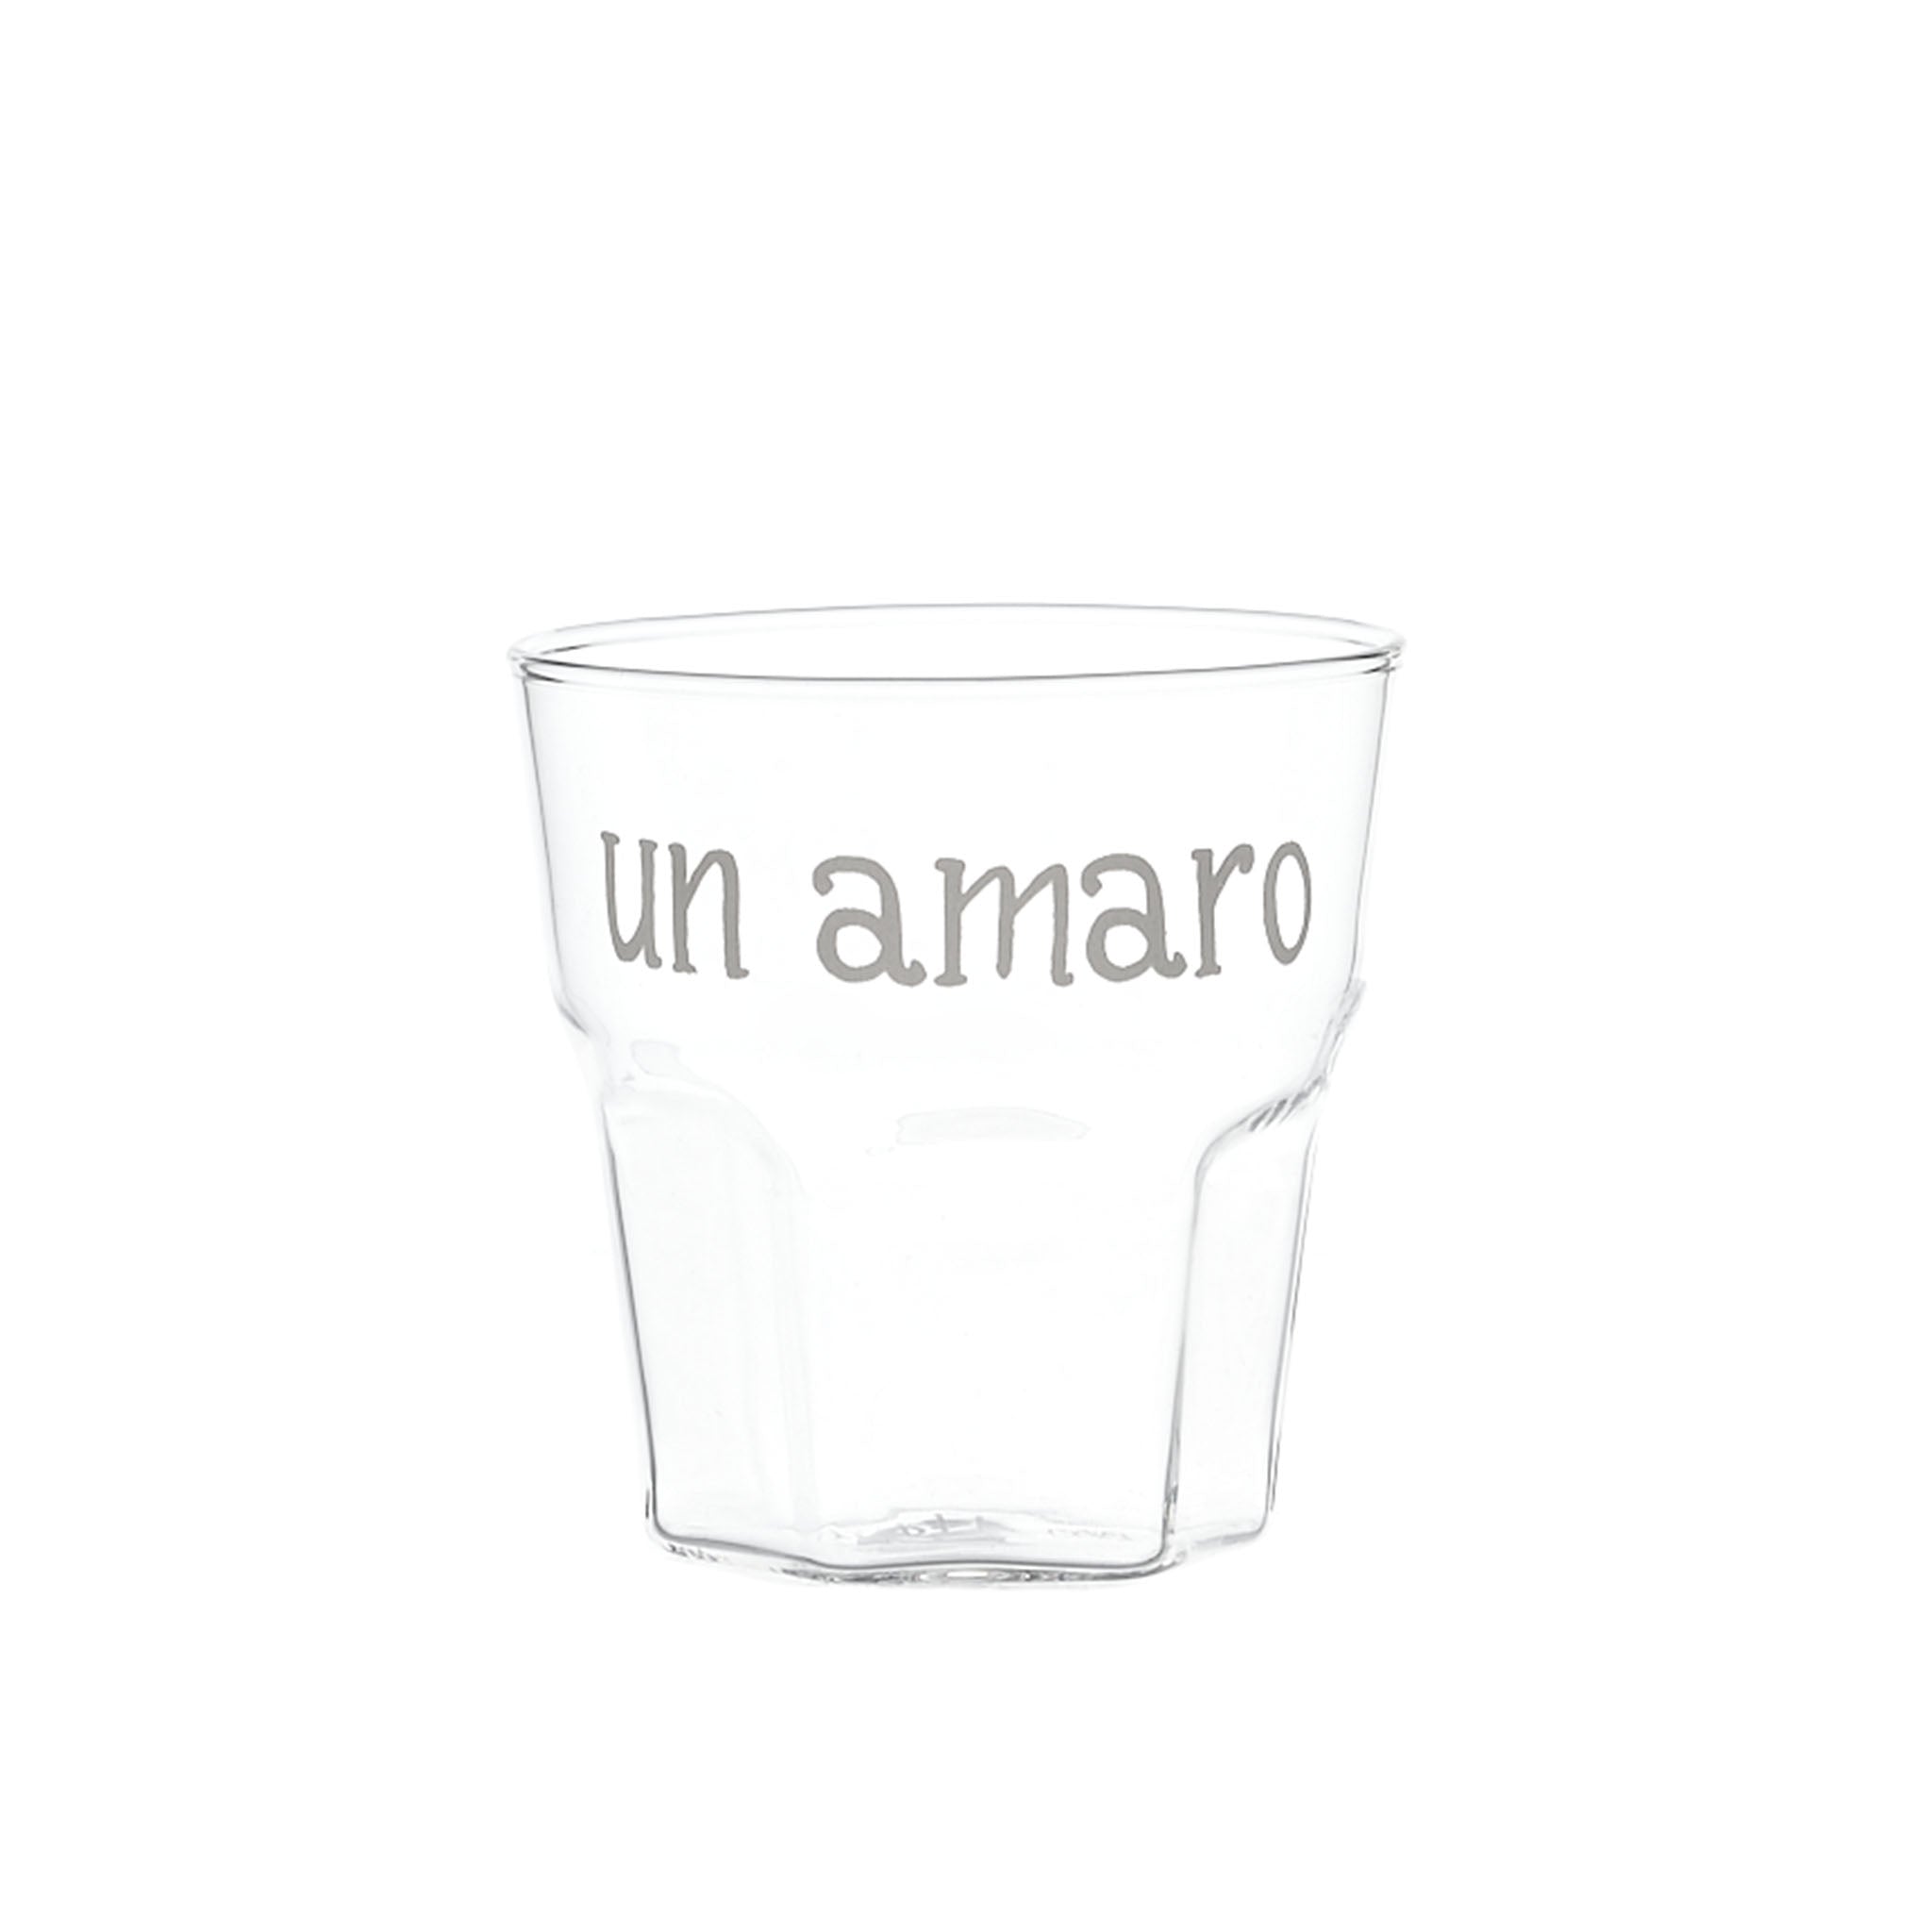 Liquor Glass "Un Amaro" in White - Set of 4